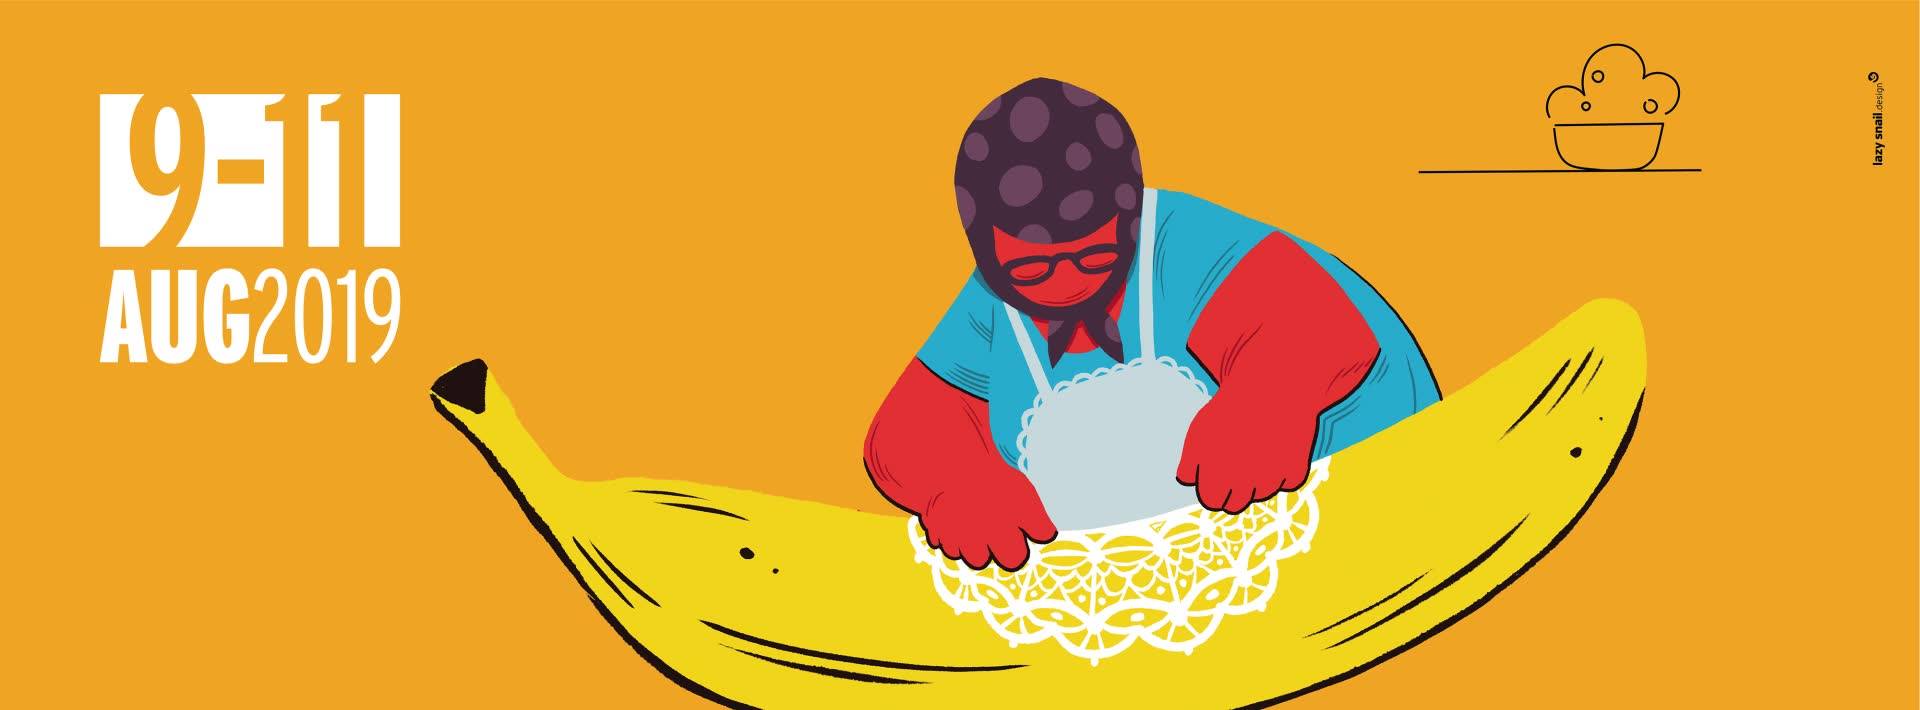 Μια από τις αφίσες της γιορτής της μπανάνας